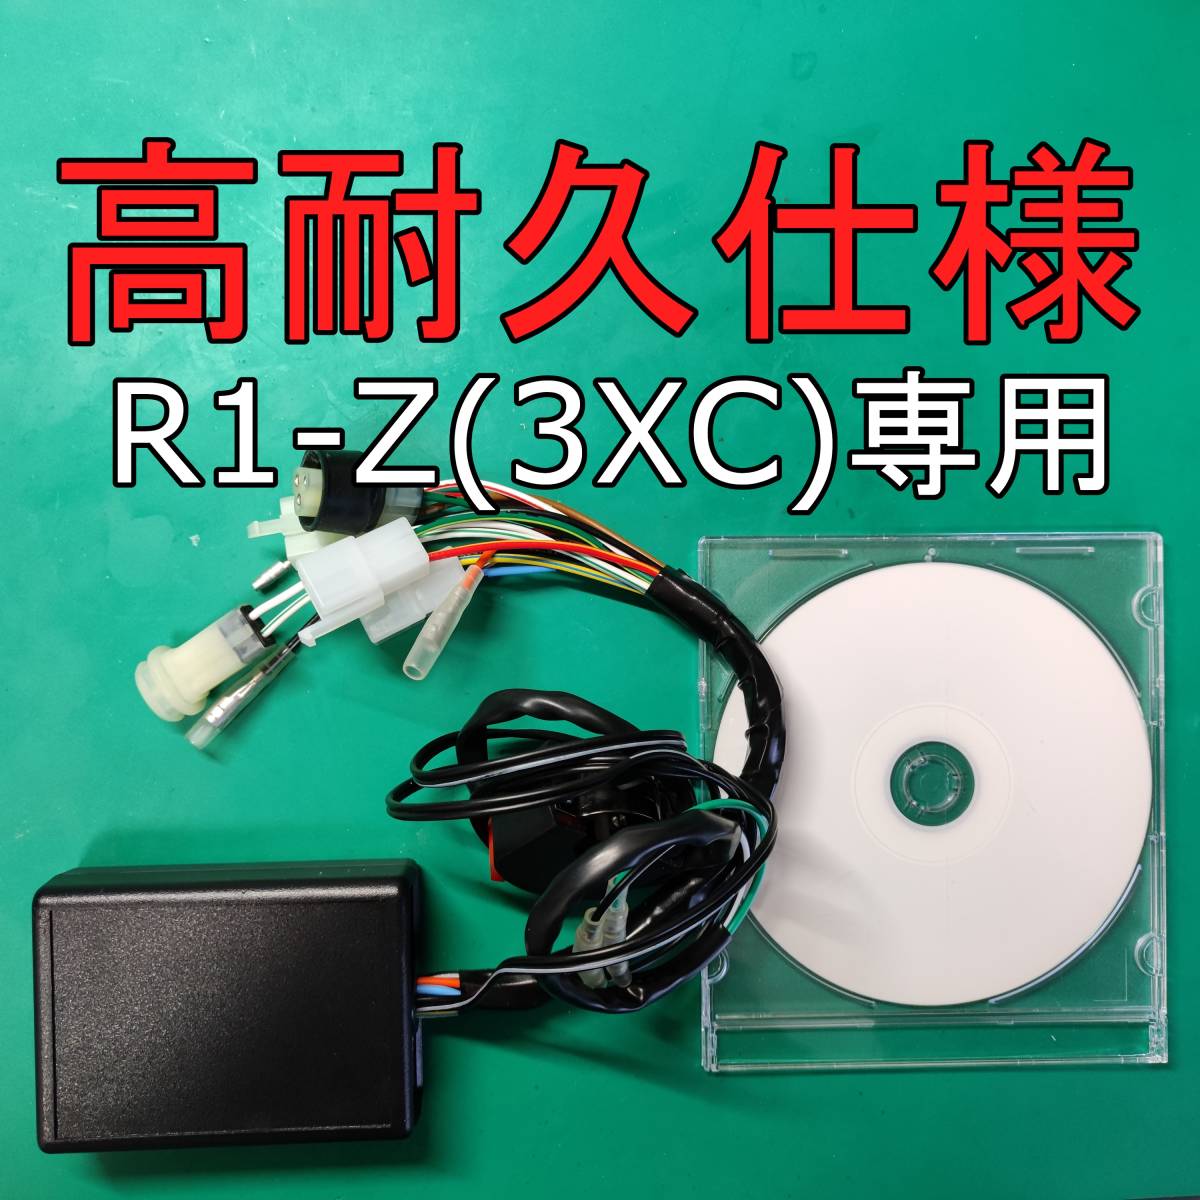 OSR-CDI R1-Z(3XC)専用 高耐久仕様　動作確認済み 商品保証有り セッティングソフト付き _画像1